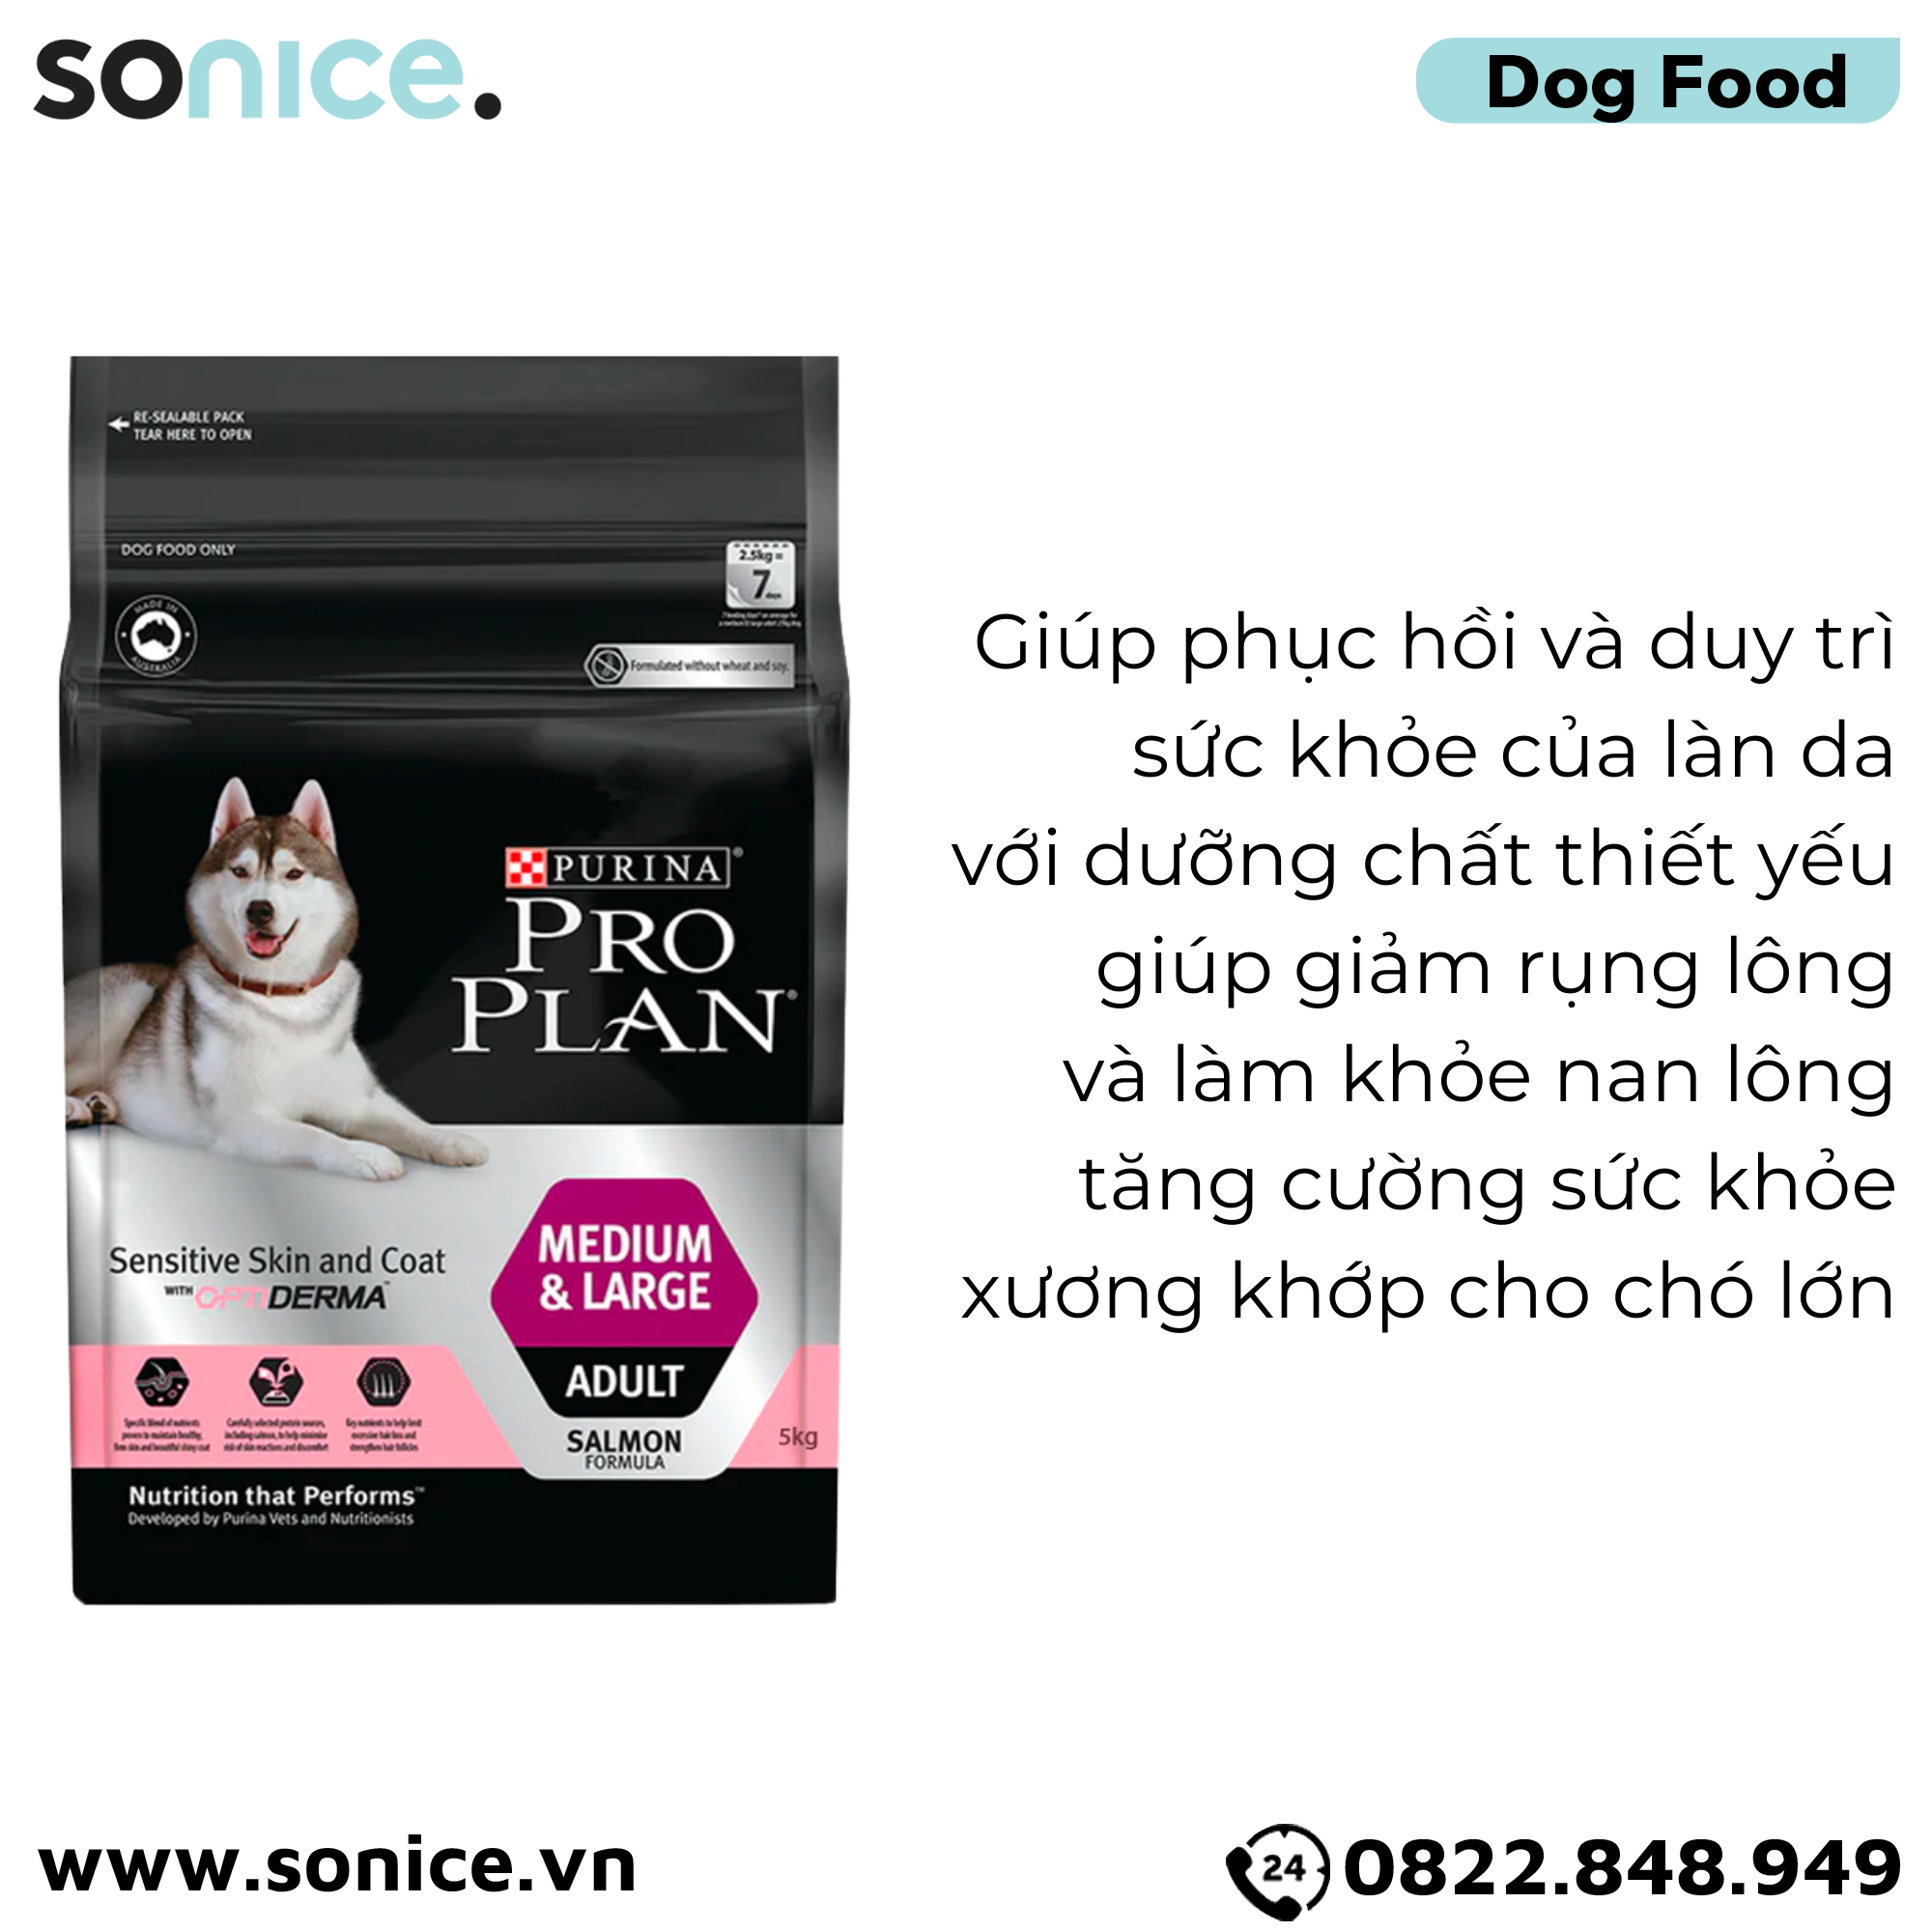  Thức ăn chó Purina PRO PLAN Medium Large Adult Sensitive Skin Coat 5kg - Dành cho da nhạy cảm dễ dị ứng giống chó lớn SONICE. 